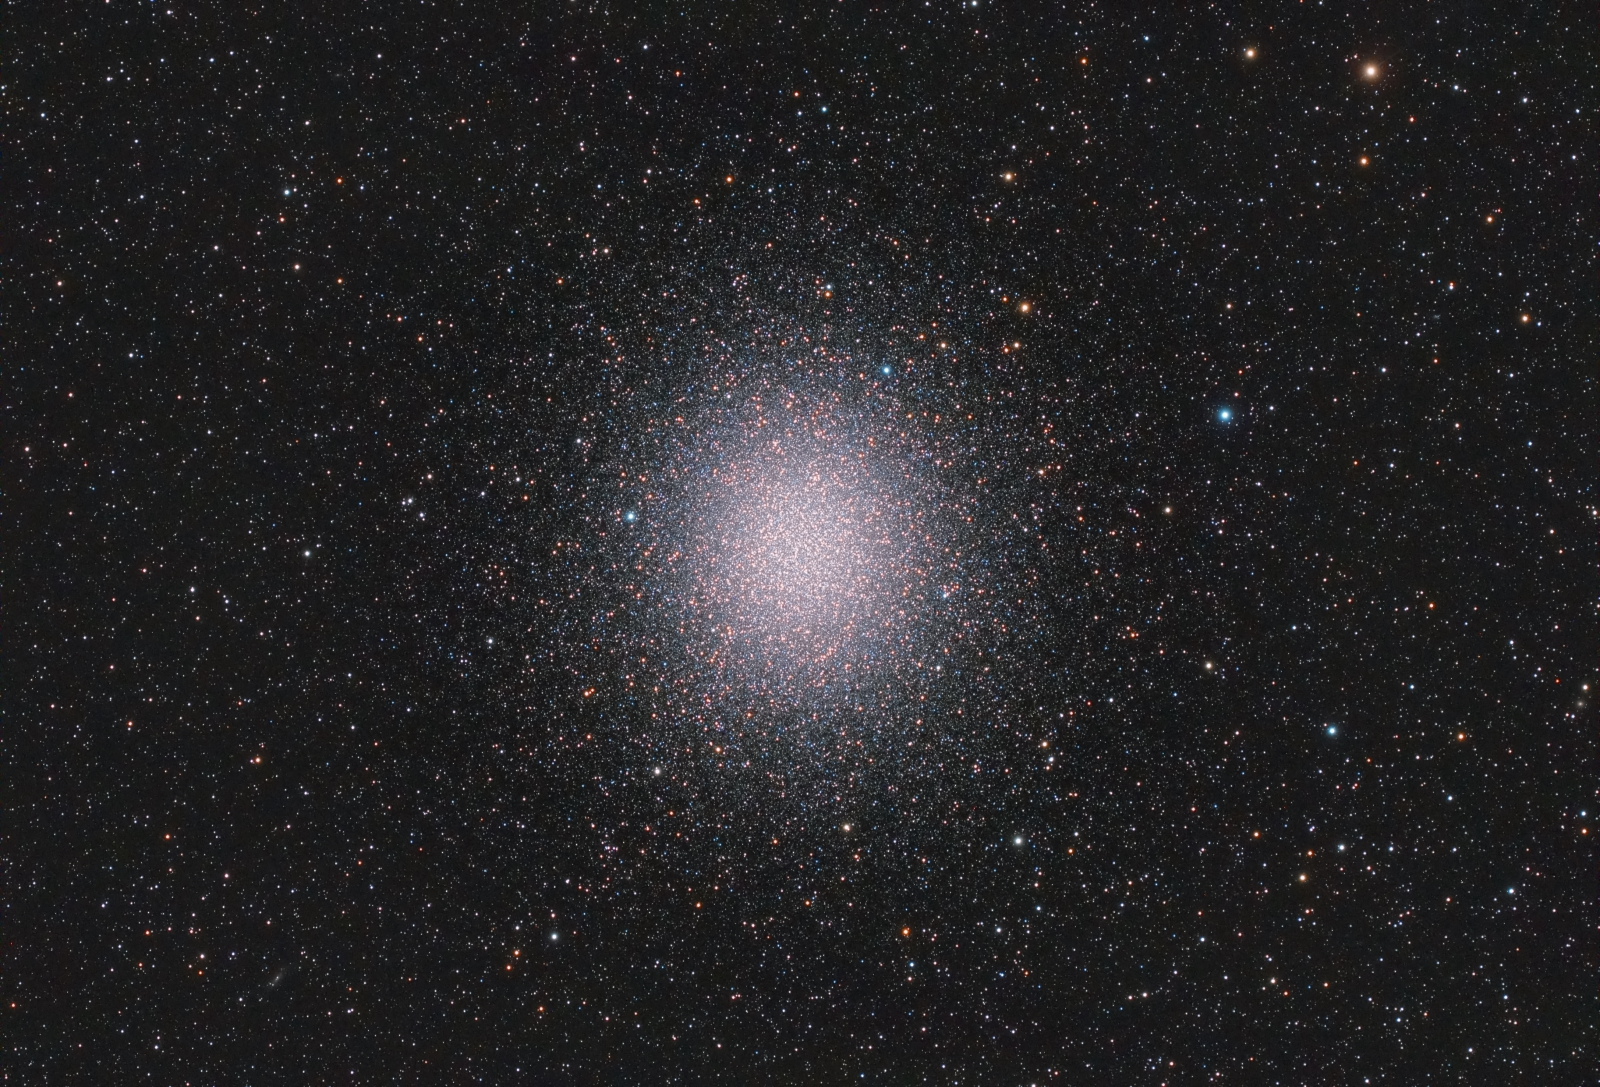 Omega-Centauri-lowres.JPG.a5529240dba516